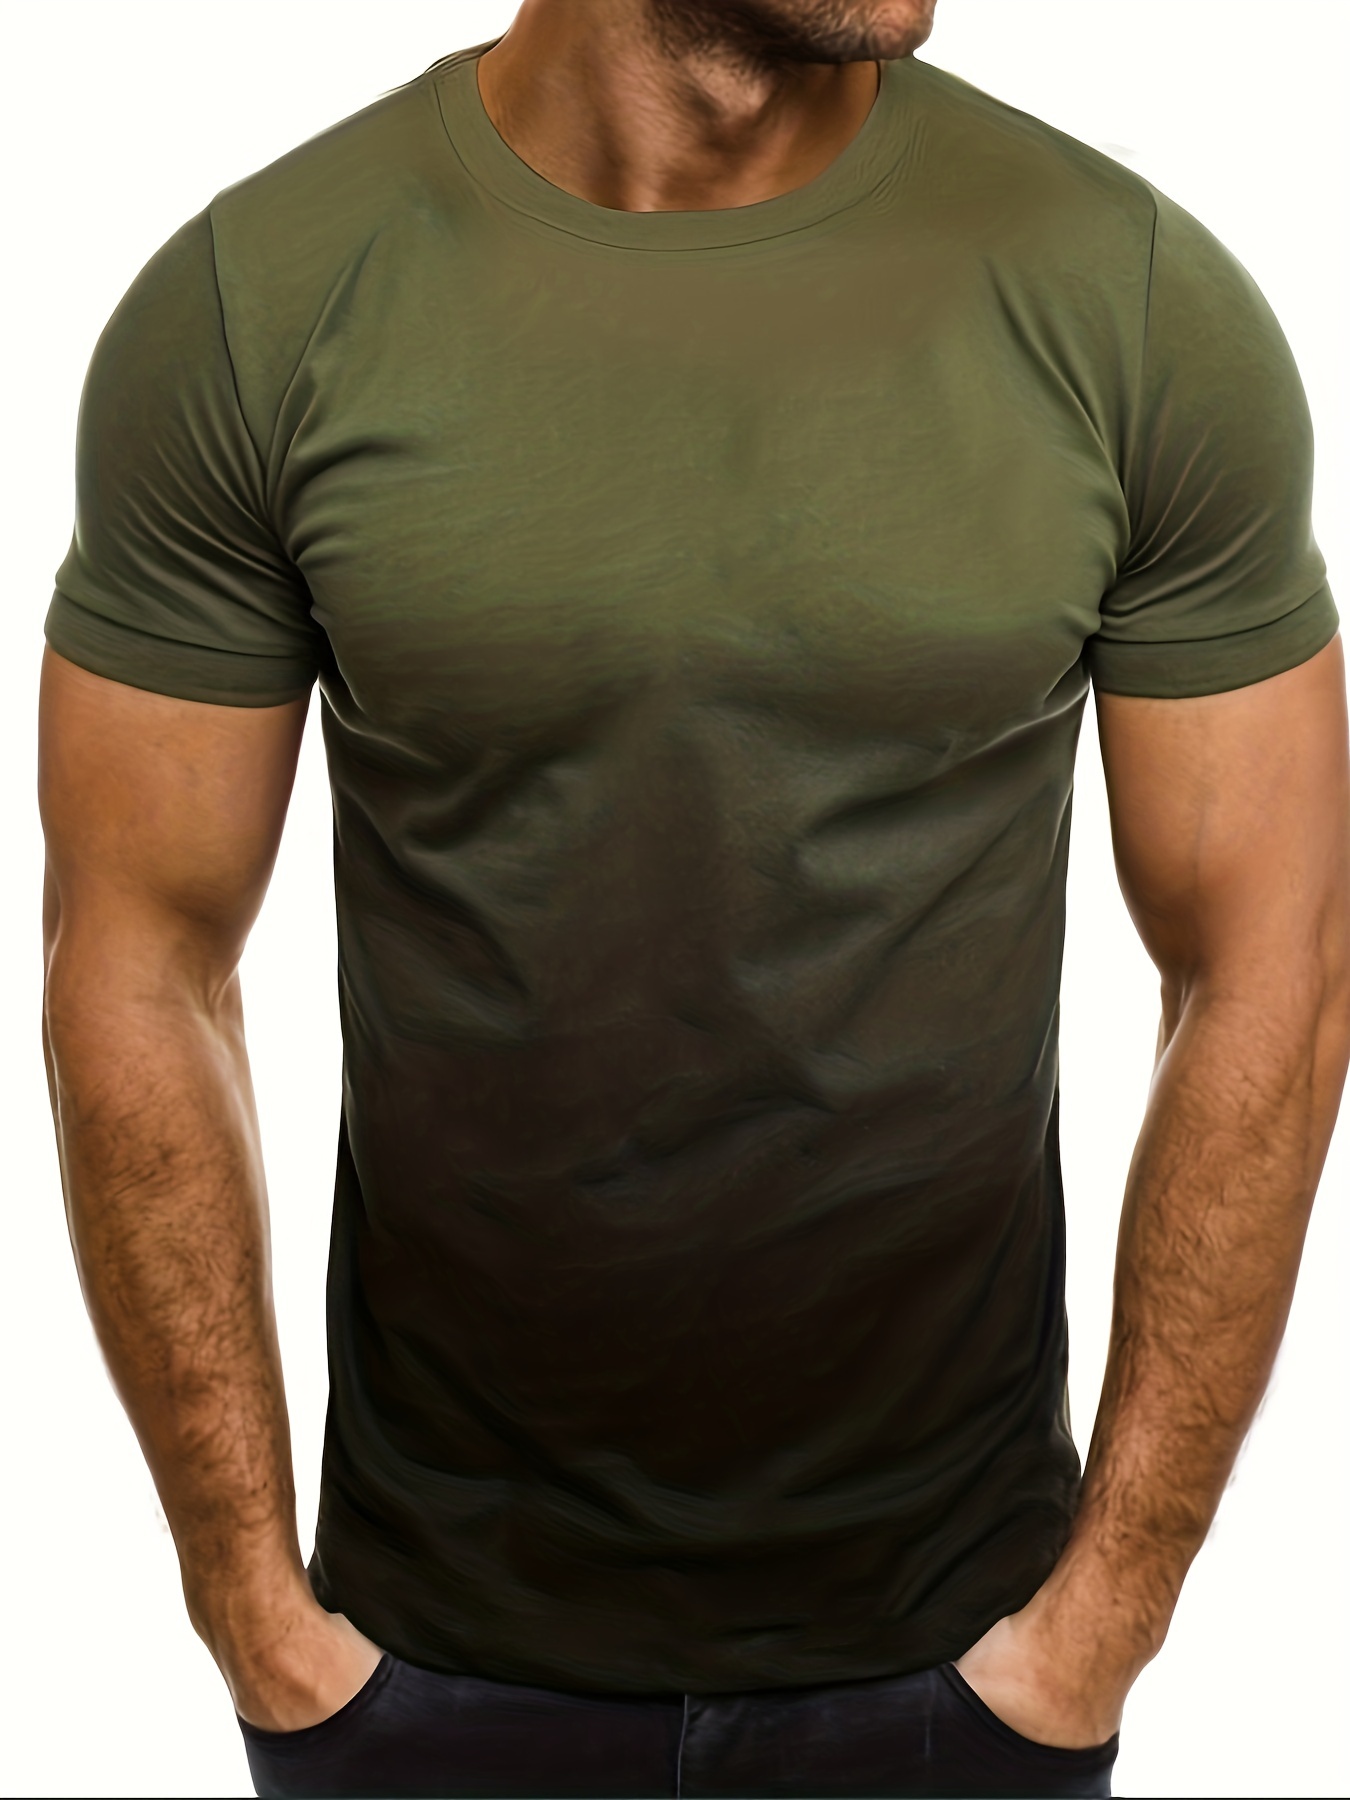 Men's Sports Gradient Color T shirt + Active Shorts + - Temu